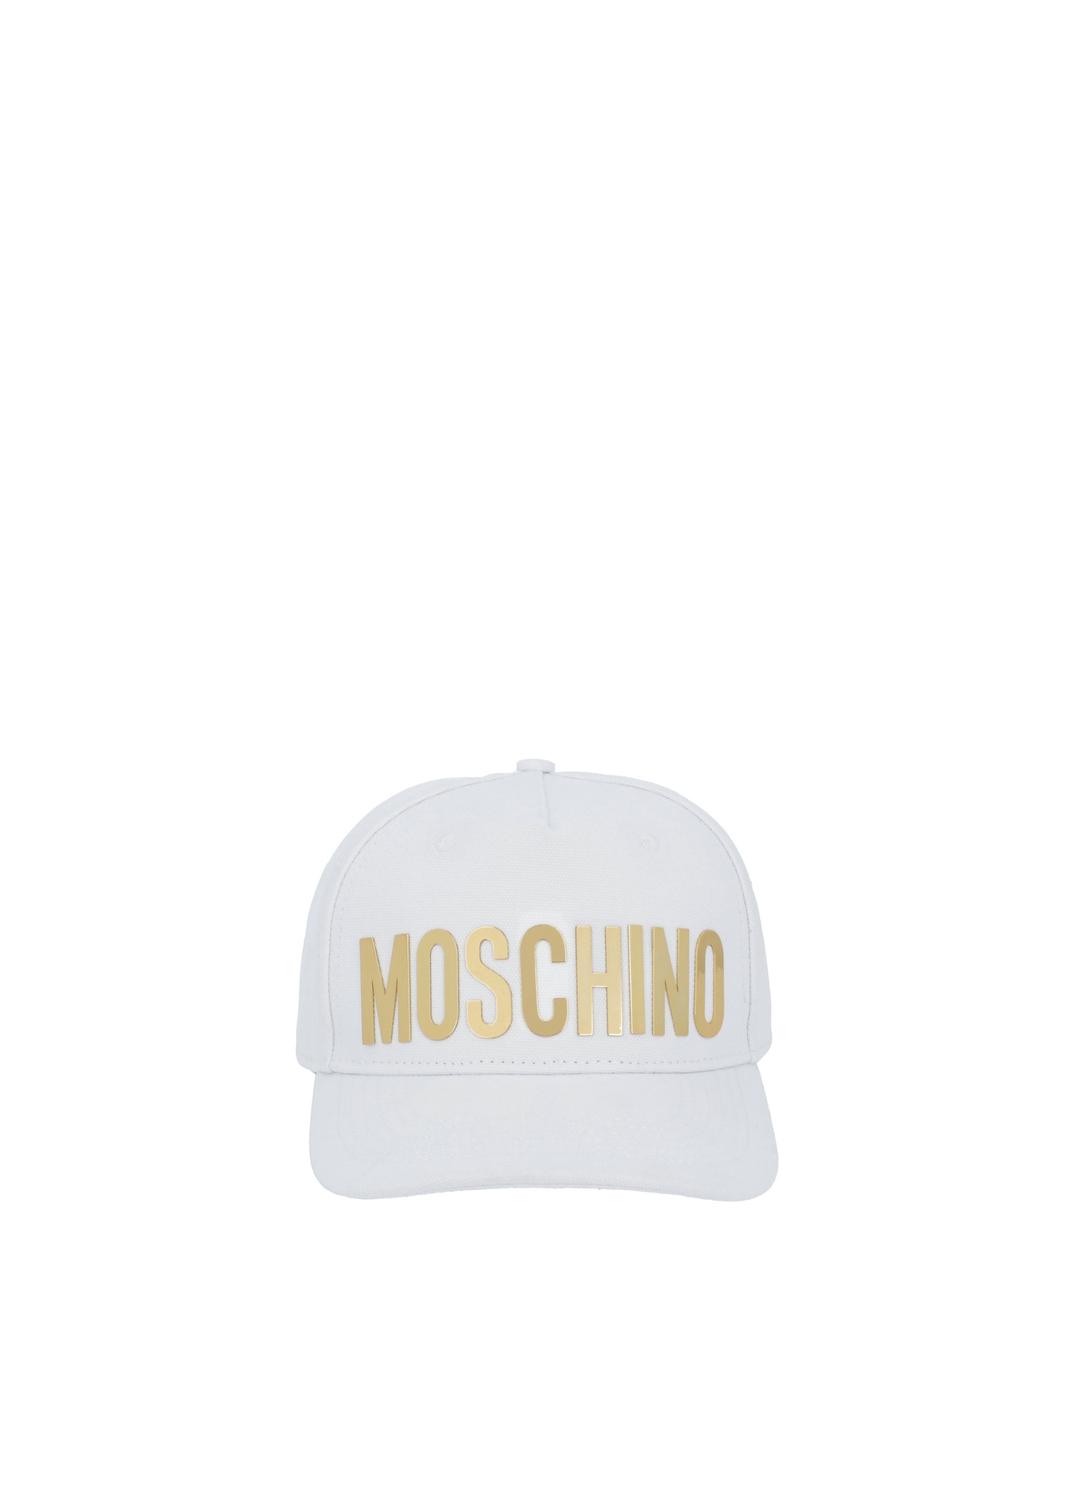 Moschino gorra con logotipo MSC-A9203